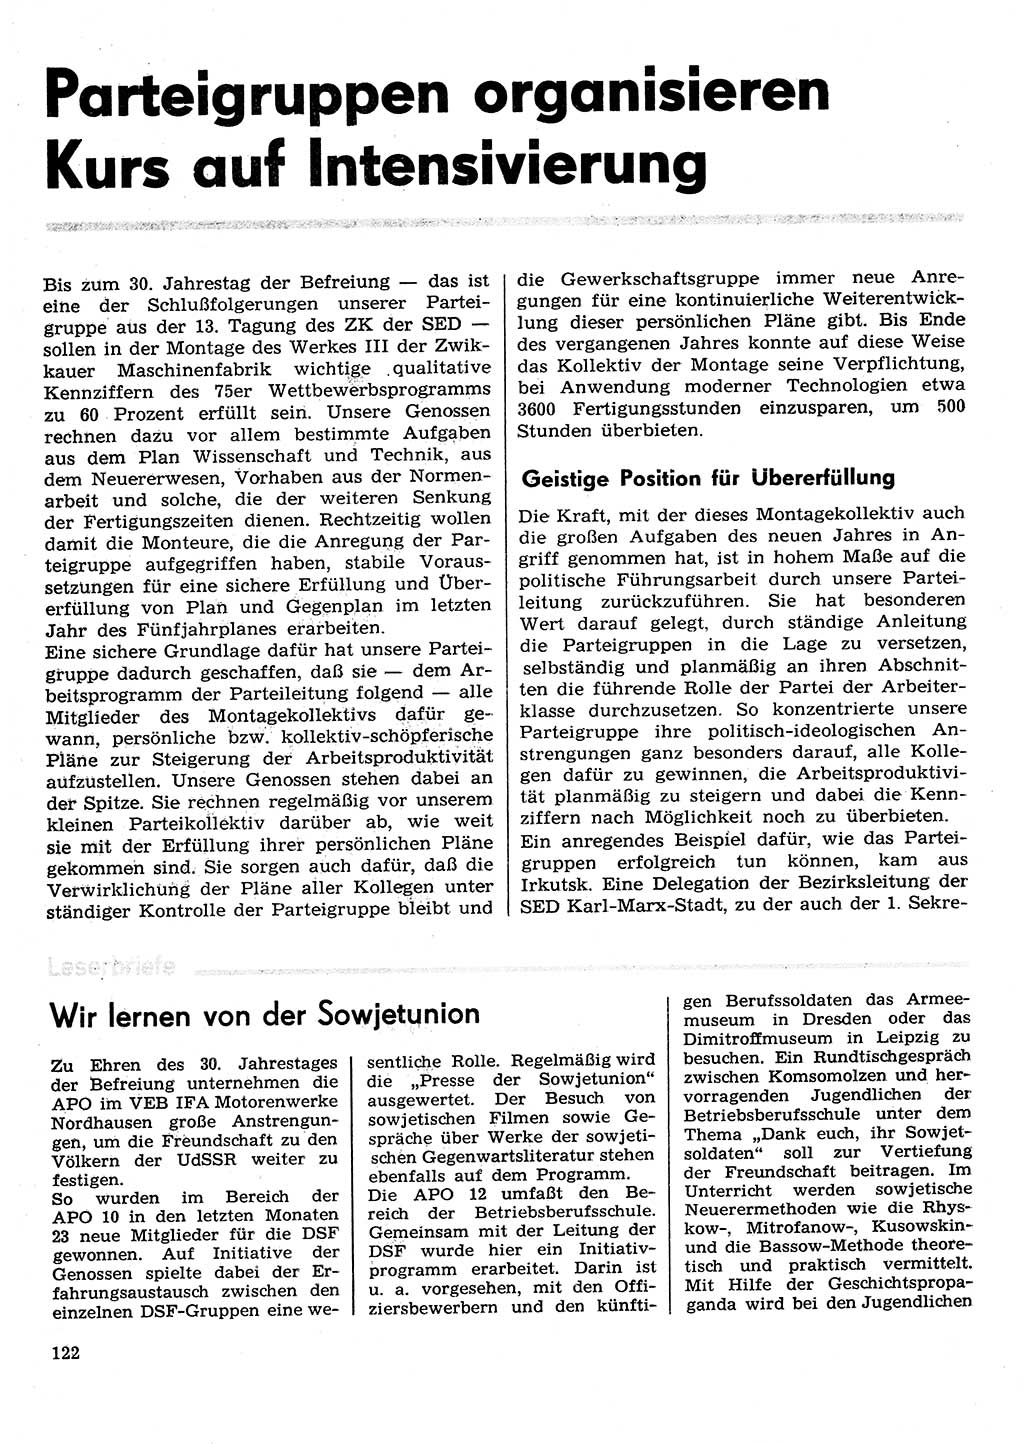 Neuer Weg (NW), Organ des Zentralkomitees (ZK) der SED (Sozialistische Einheitspartei Deutschlands) für Fragen des Parteilebens, 30. Jahrgang [Deutsche Demokratische Republik (DDR)] 1975, Seite 122 (NW ZK SED DDR 1975, S. 122)